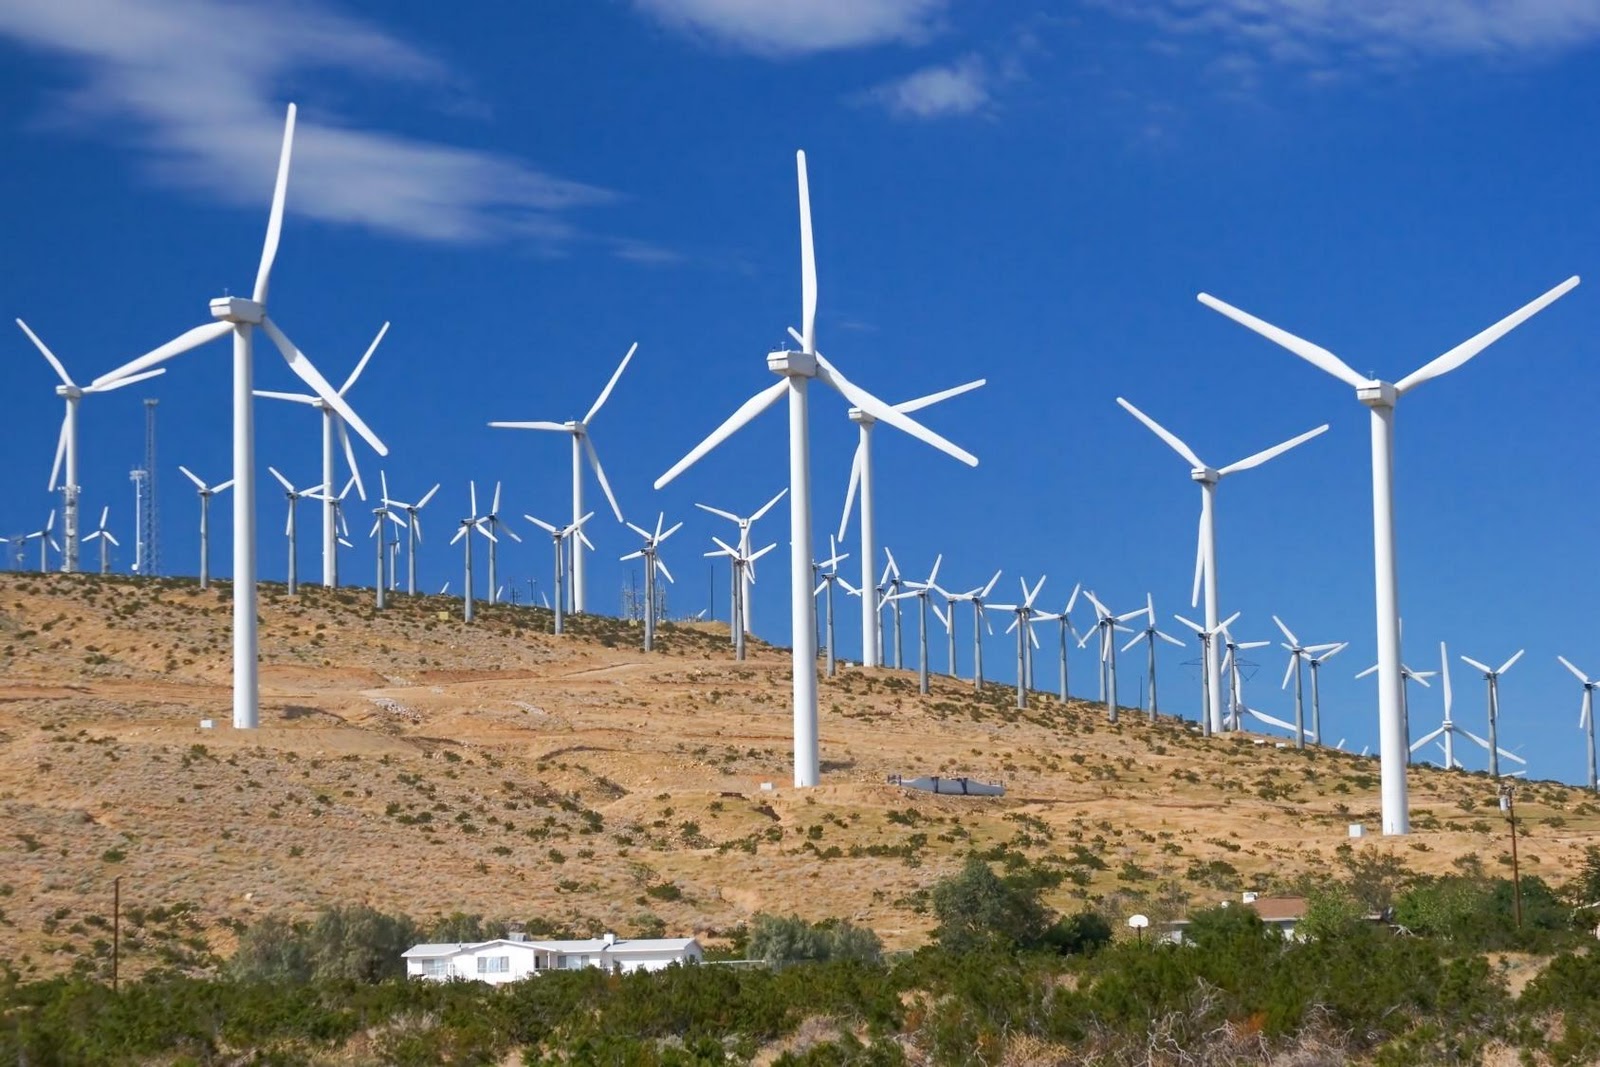 Enormes Moinhos Vento Modernos Com Turbinas Alimentadas Com Energia Eólica  fotos, imagens de © GaudiLab #279088774